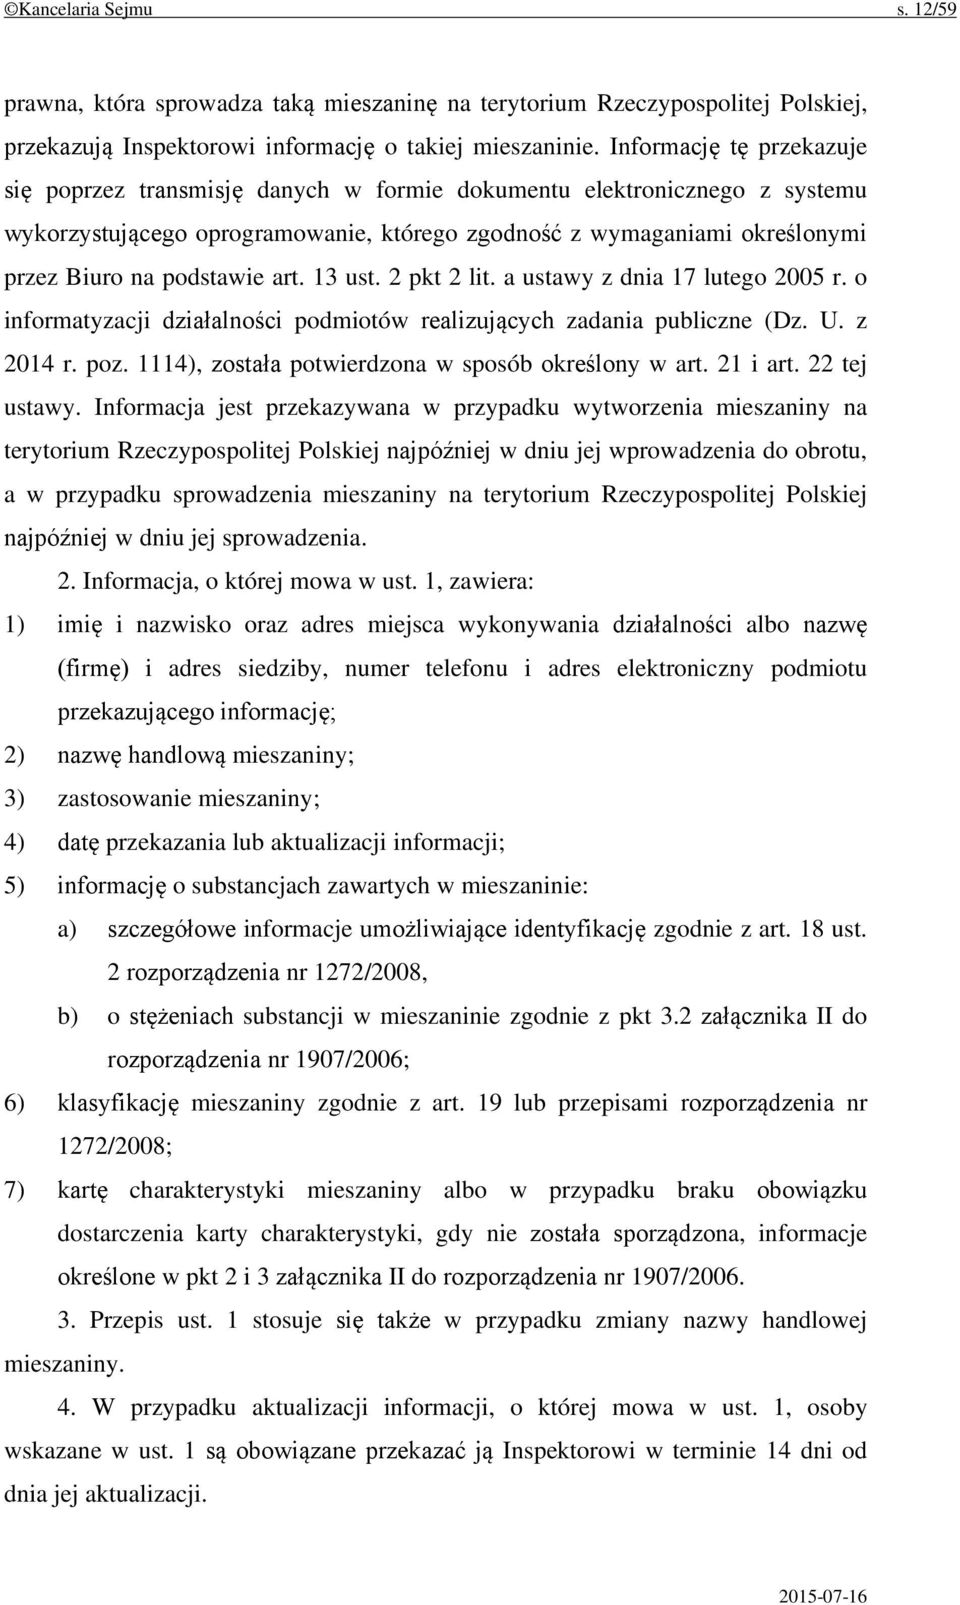 podstawie art. 13 ust. 2 pkt 2 lit. a ustawy z dnia 17 lutego 2005 r. o informatyzacji działalności podmiotów realizujących zadania publiczne (Dz. U. z 2014 r. poz.